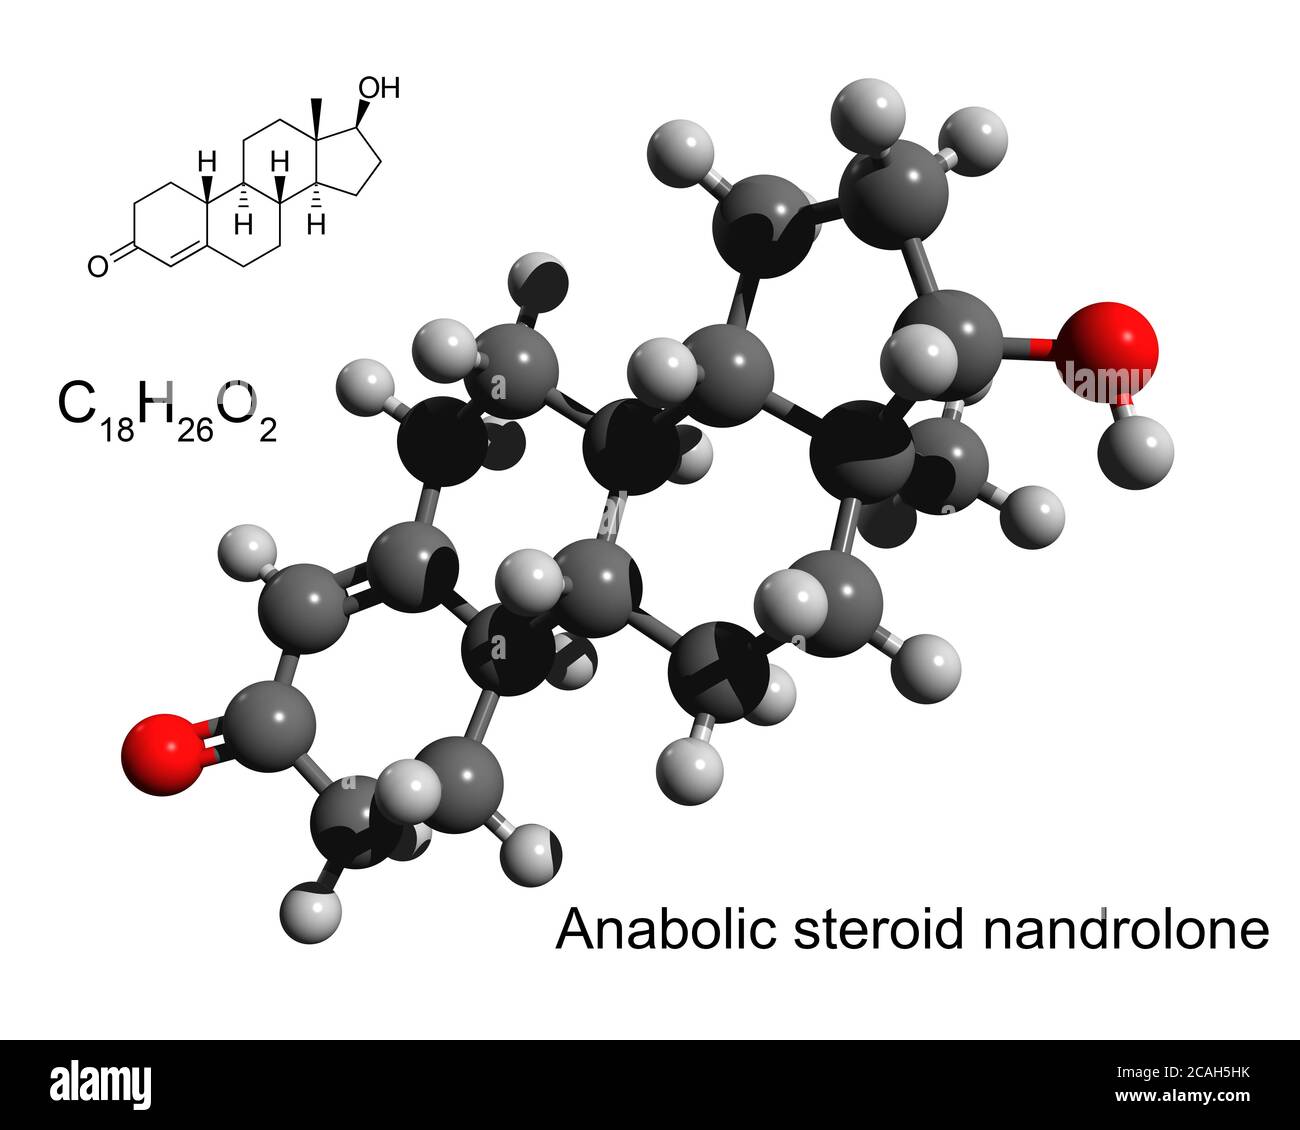 Chemische Formel, Strukturformel und 3D Ball-und-Stick-Modell von anabolen Steroid Nandrolone, weißer Hintergrund Stockfoto